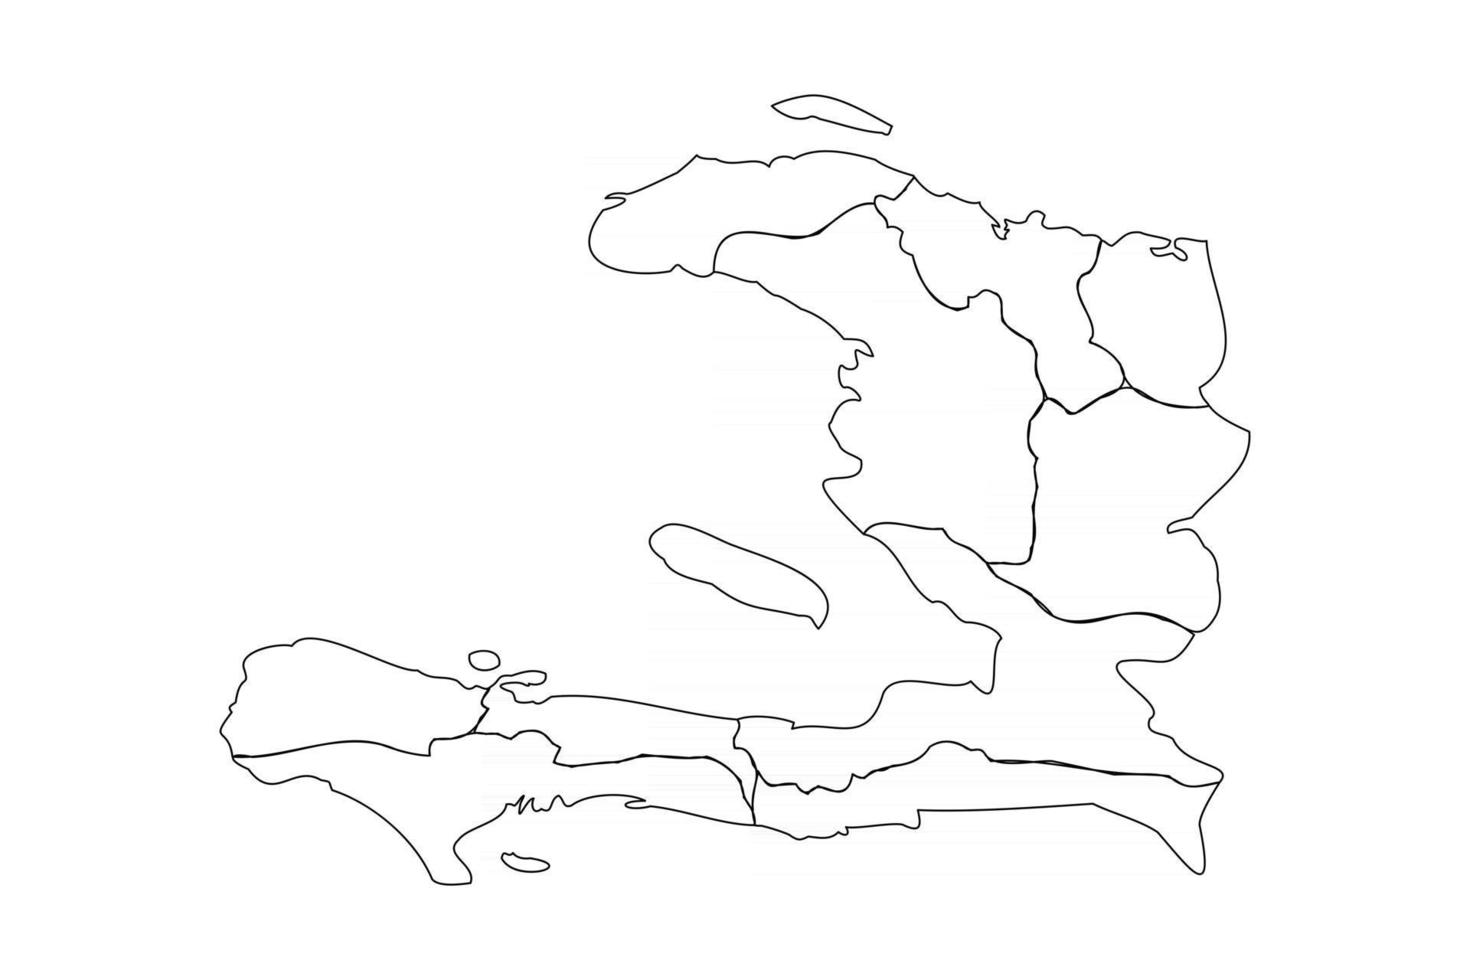 mapa do doodle do haiti com estados vetor